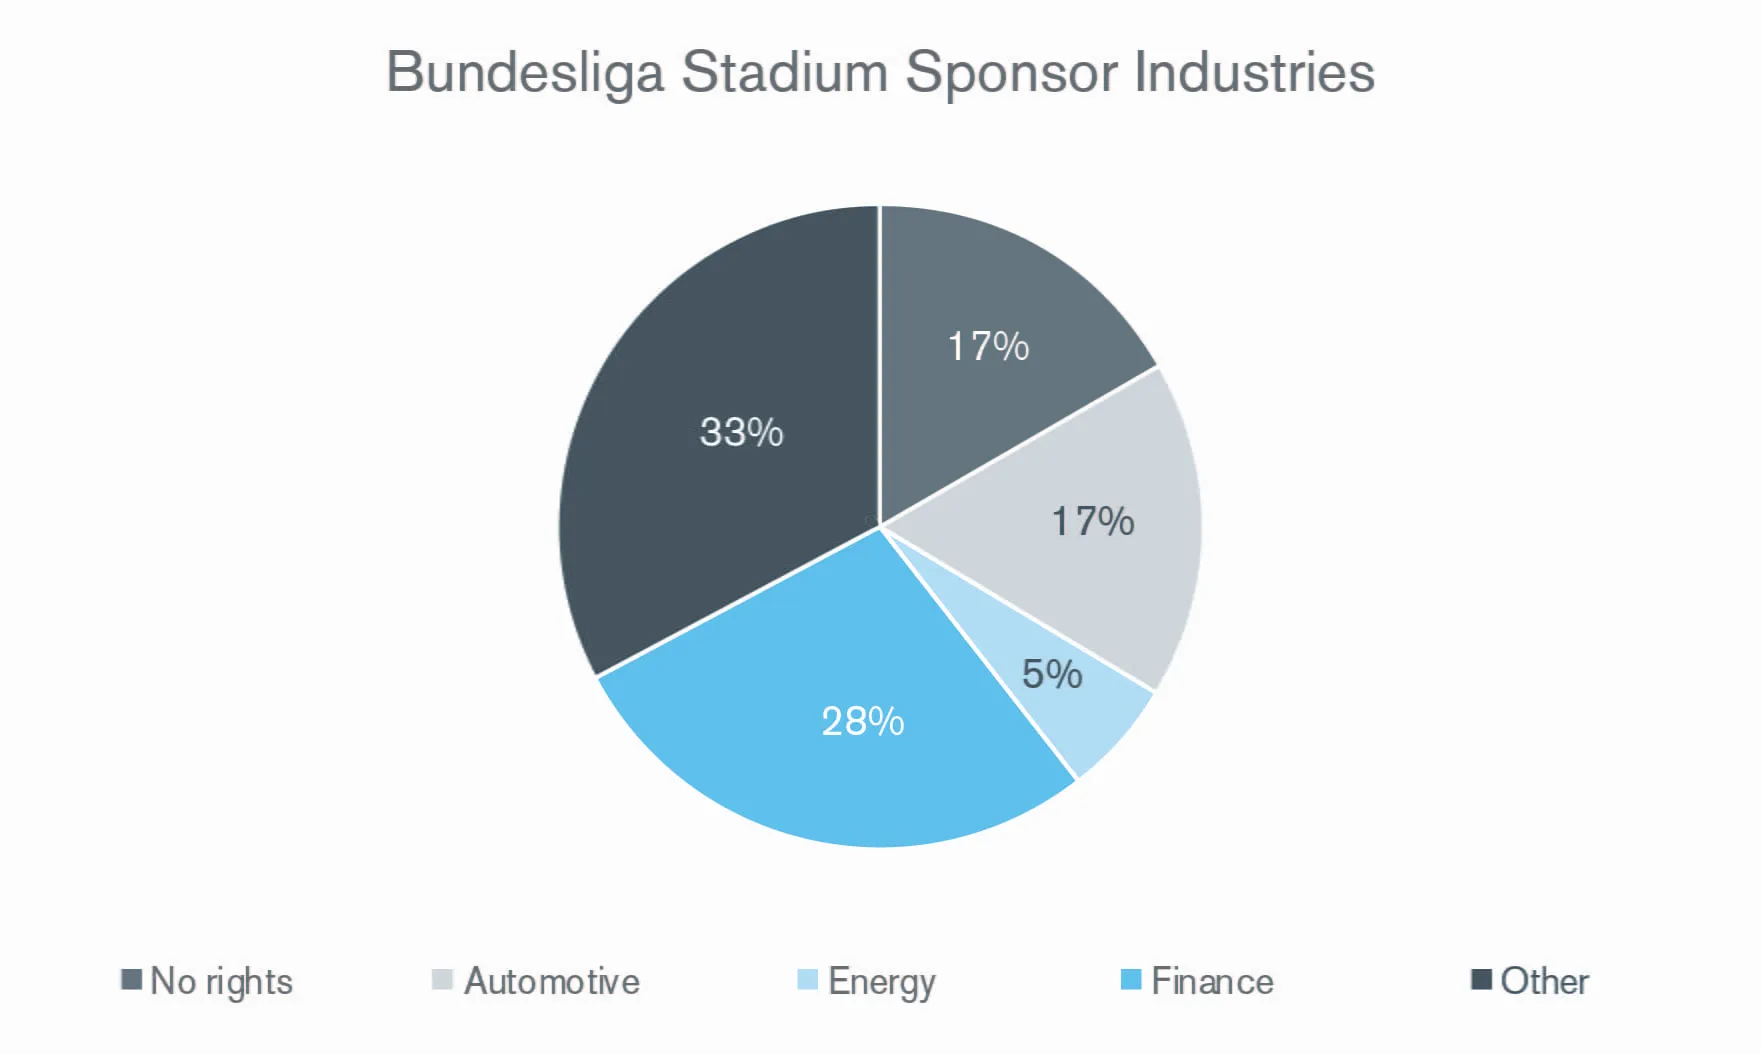 Bundesliga Stadium Sponsor Industries